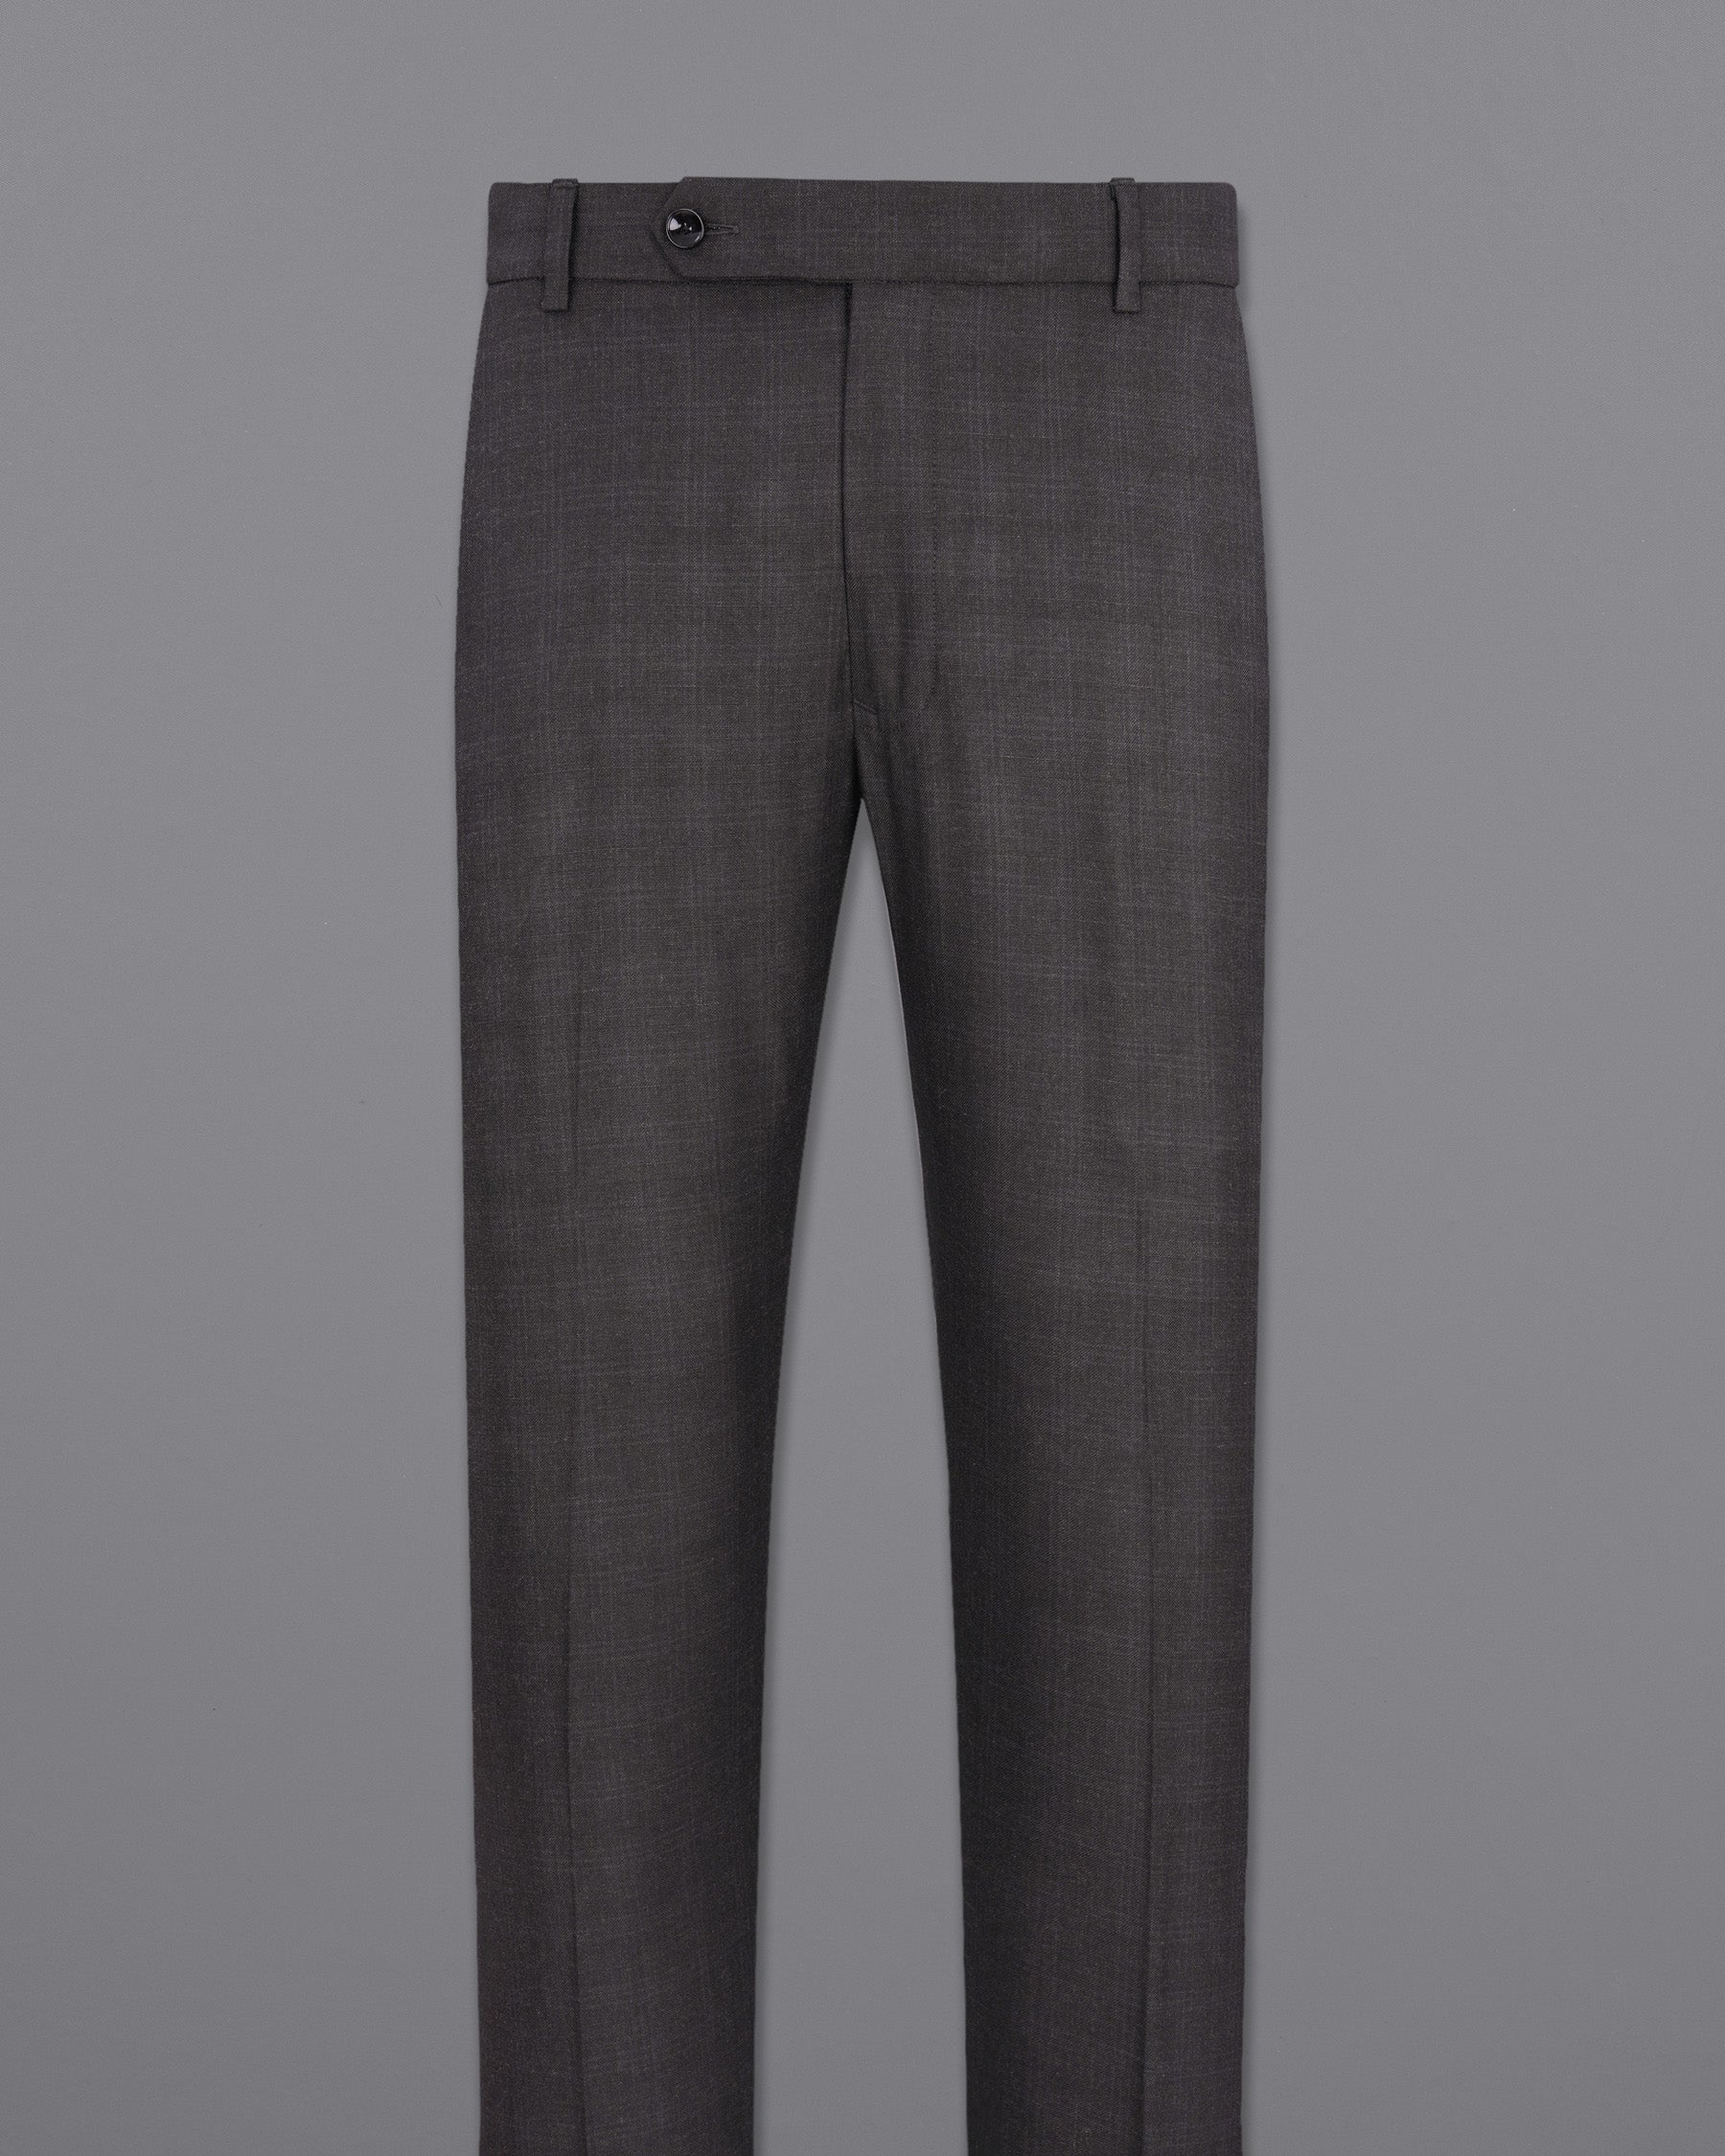 Iridium Gray Subtle Plaid Single Breasted Suit